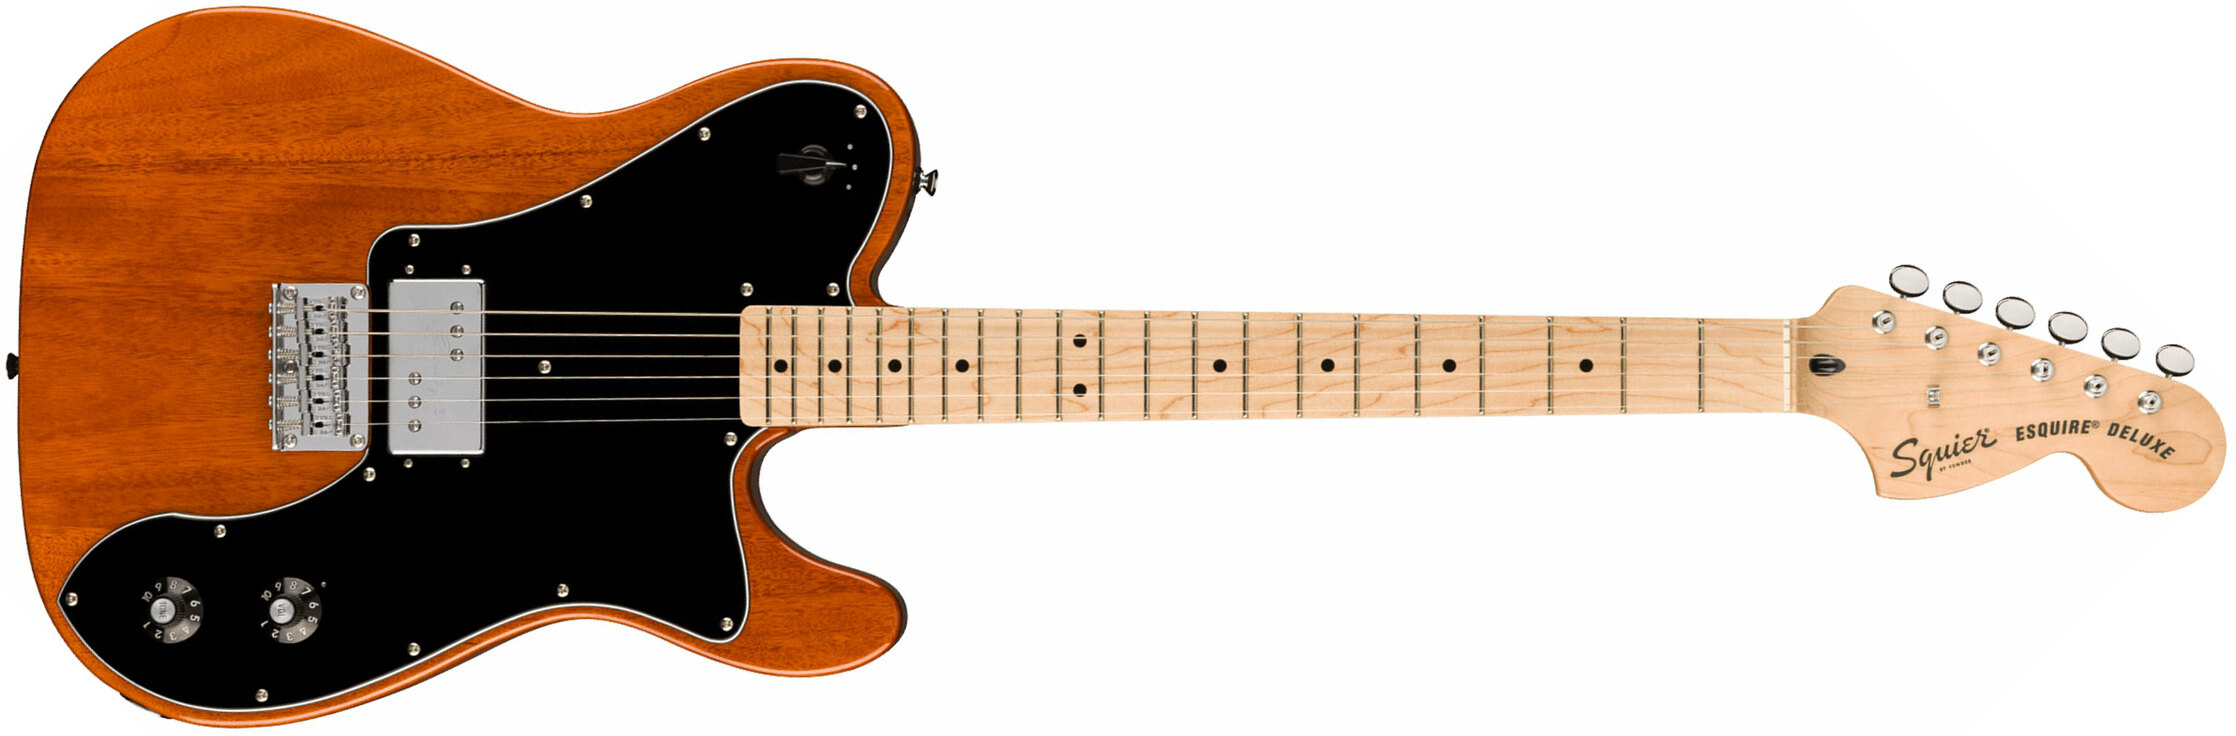 Squier Esquire Deluxe Paranormal 1h Ht Mn - Mocha - Elektrische gitaar in Str-vorm - Main picture